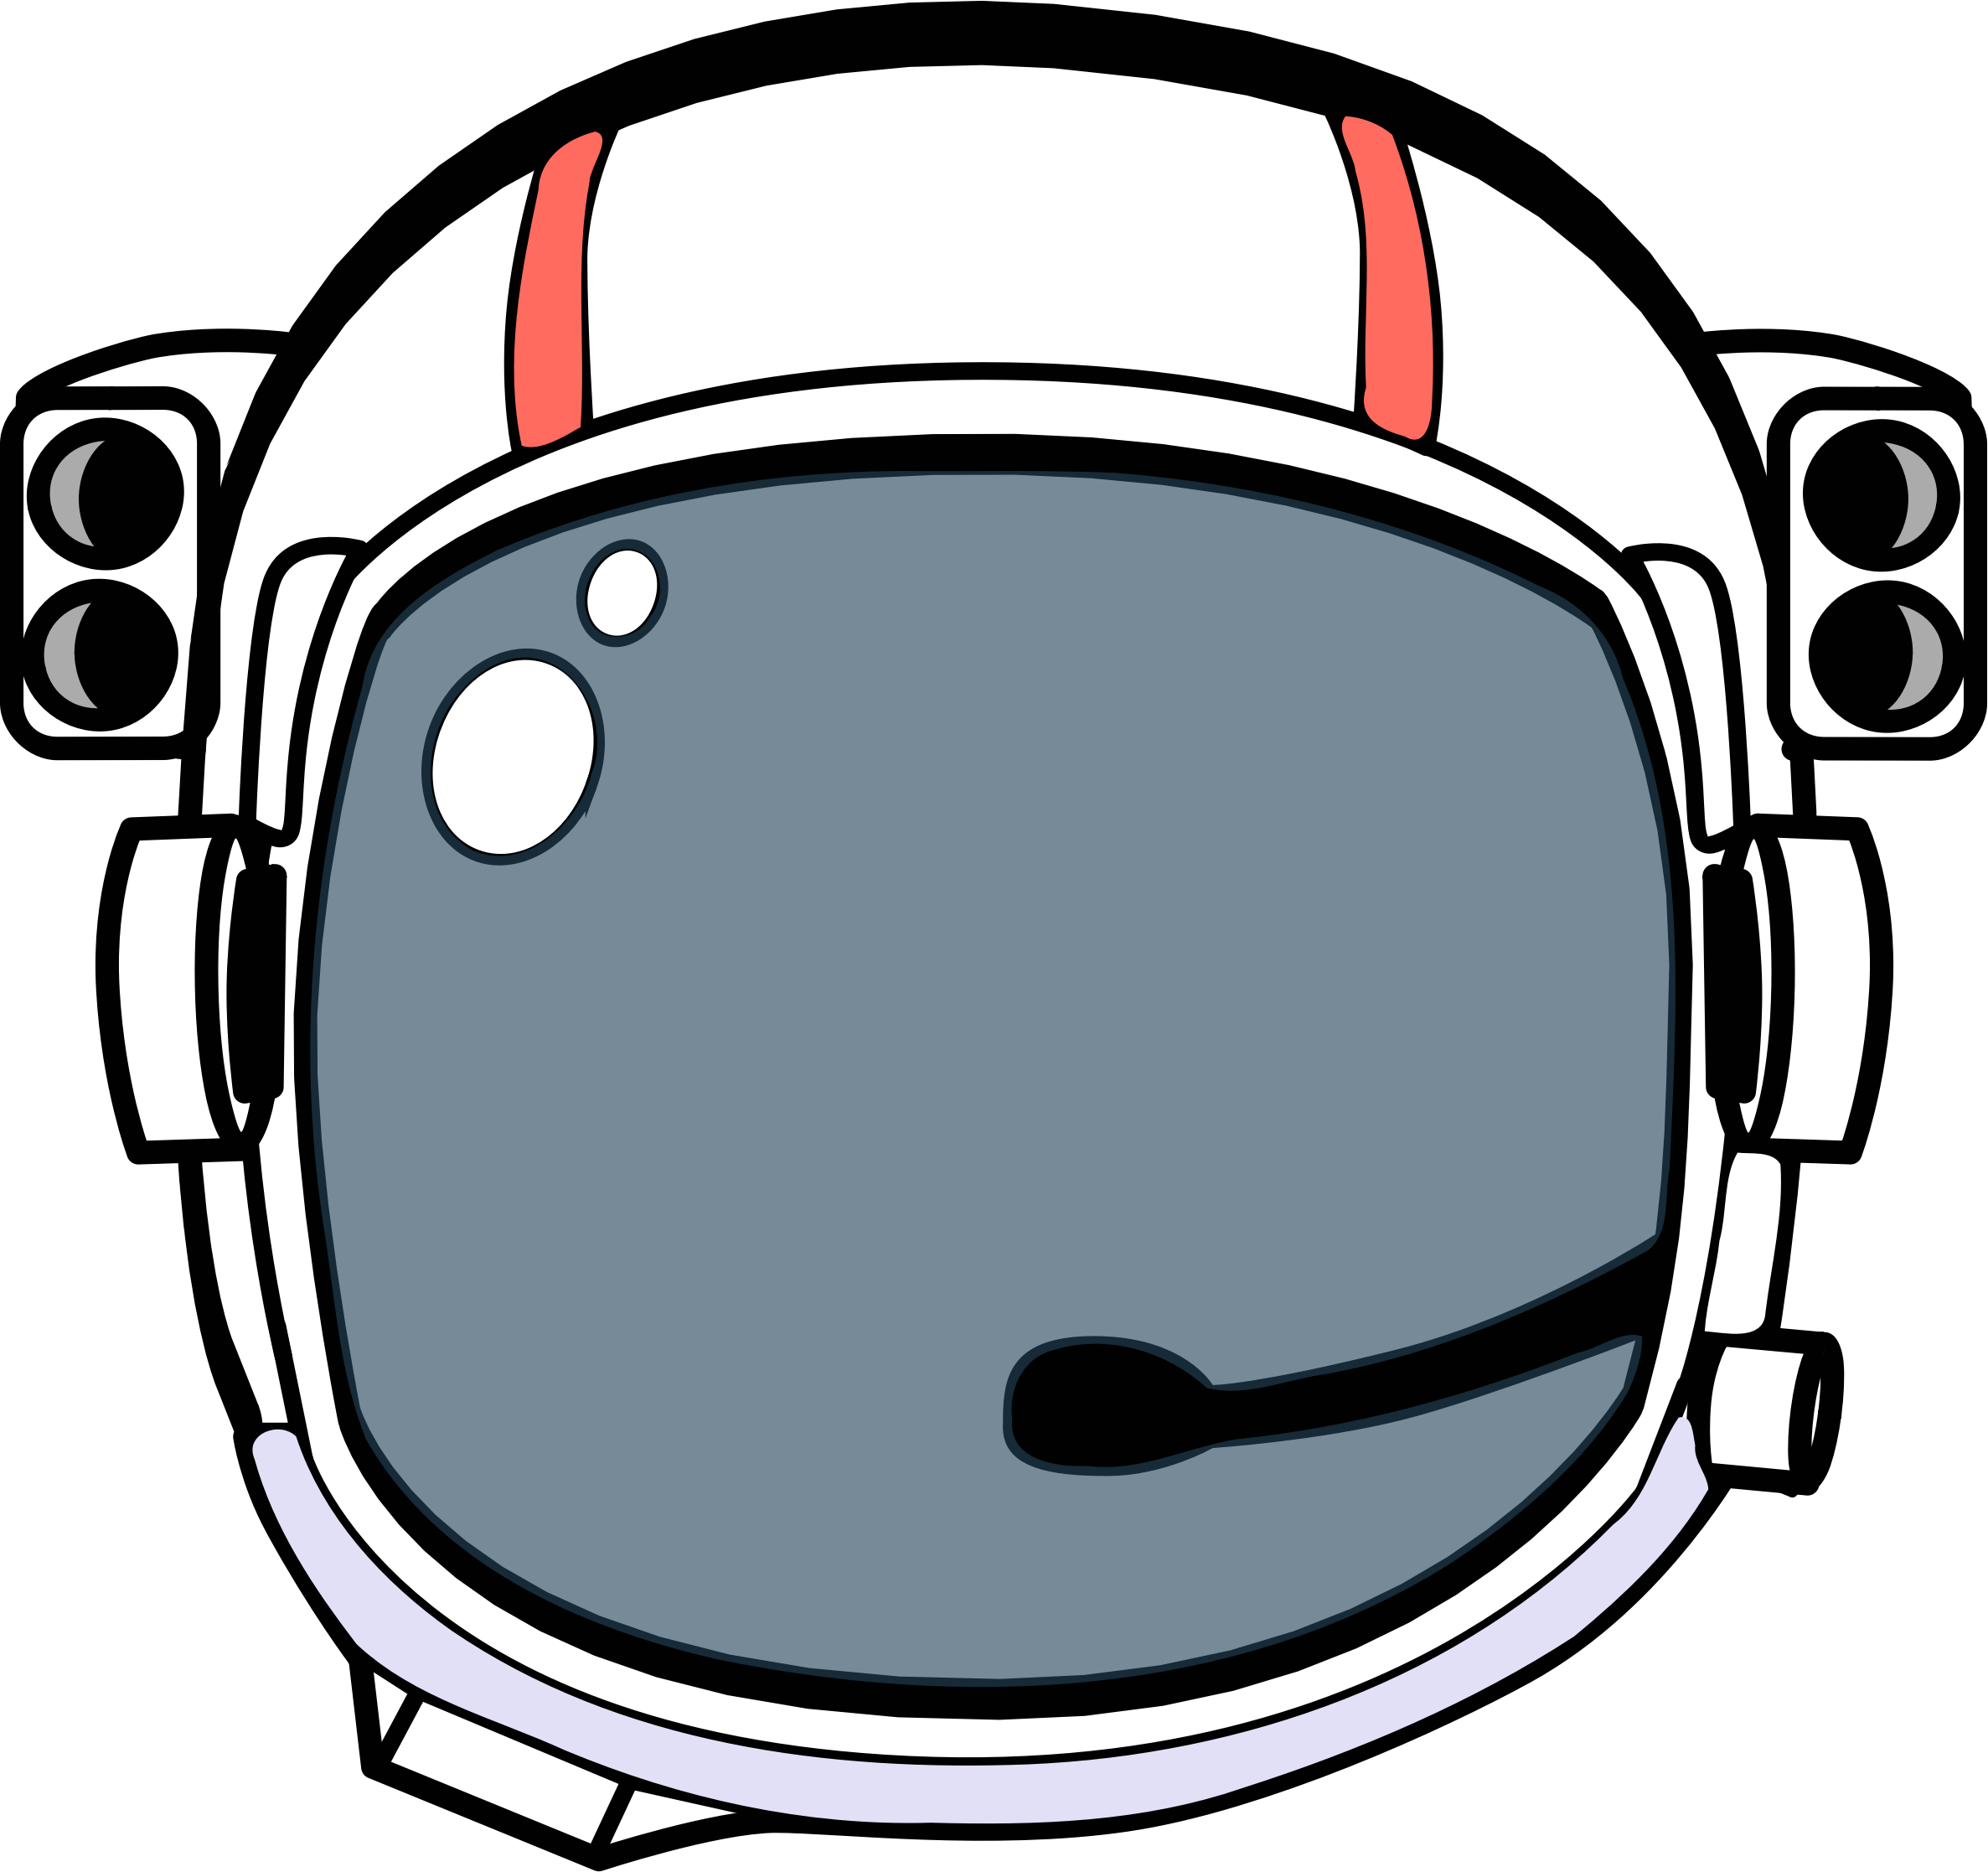 Космический шлем вектор. Шлем Astronaut Helmet. Шлем Космонавта вектор. Шлем от скафандра. Шлем космонавта шаблон для вырезания распечатать